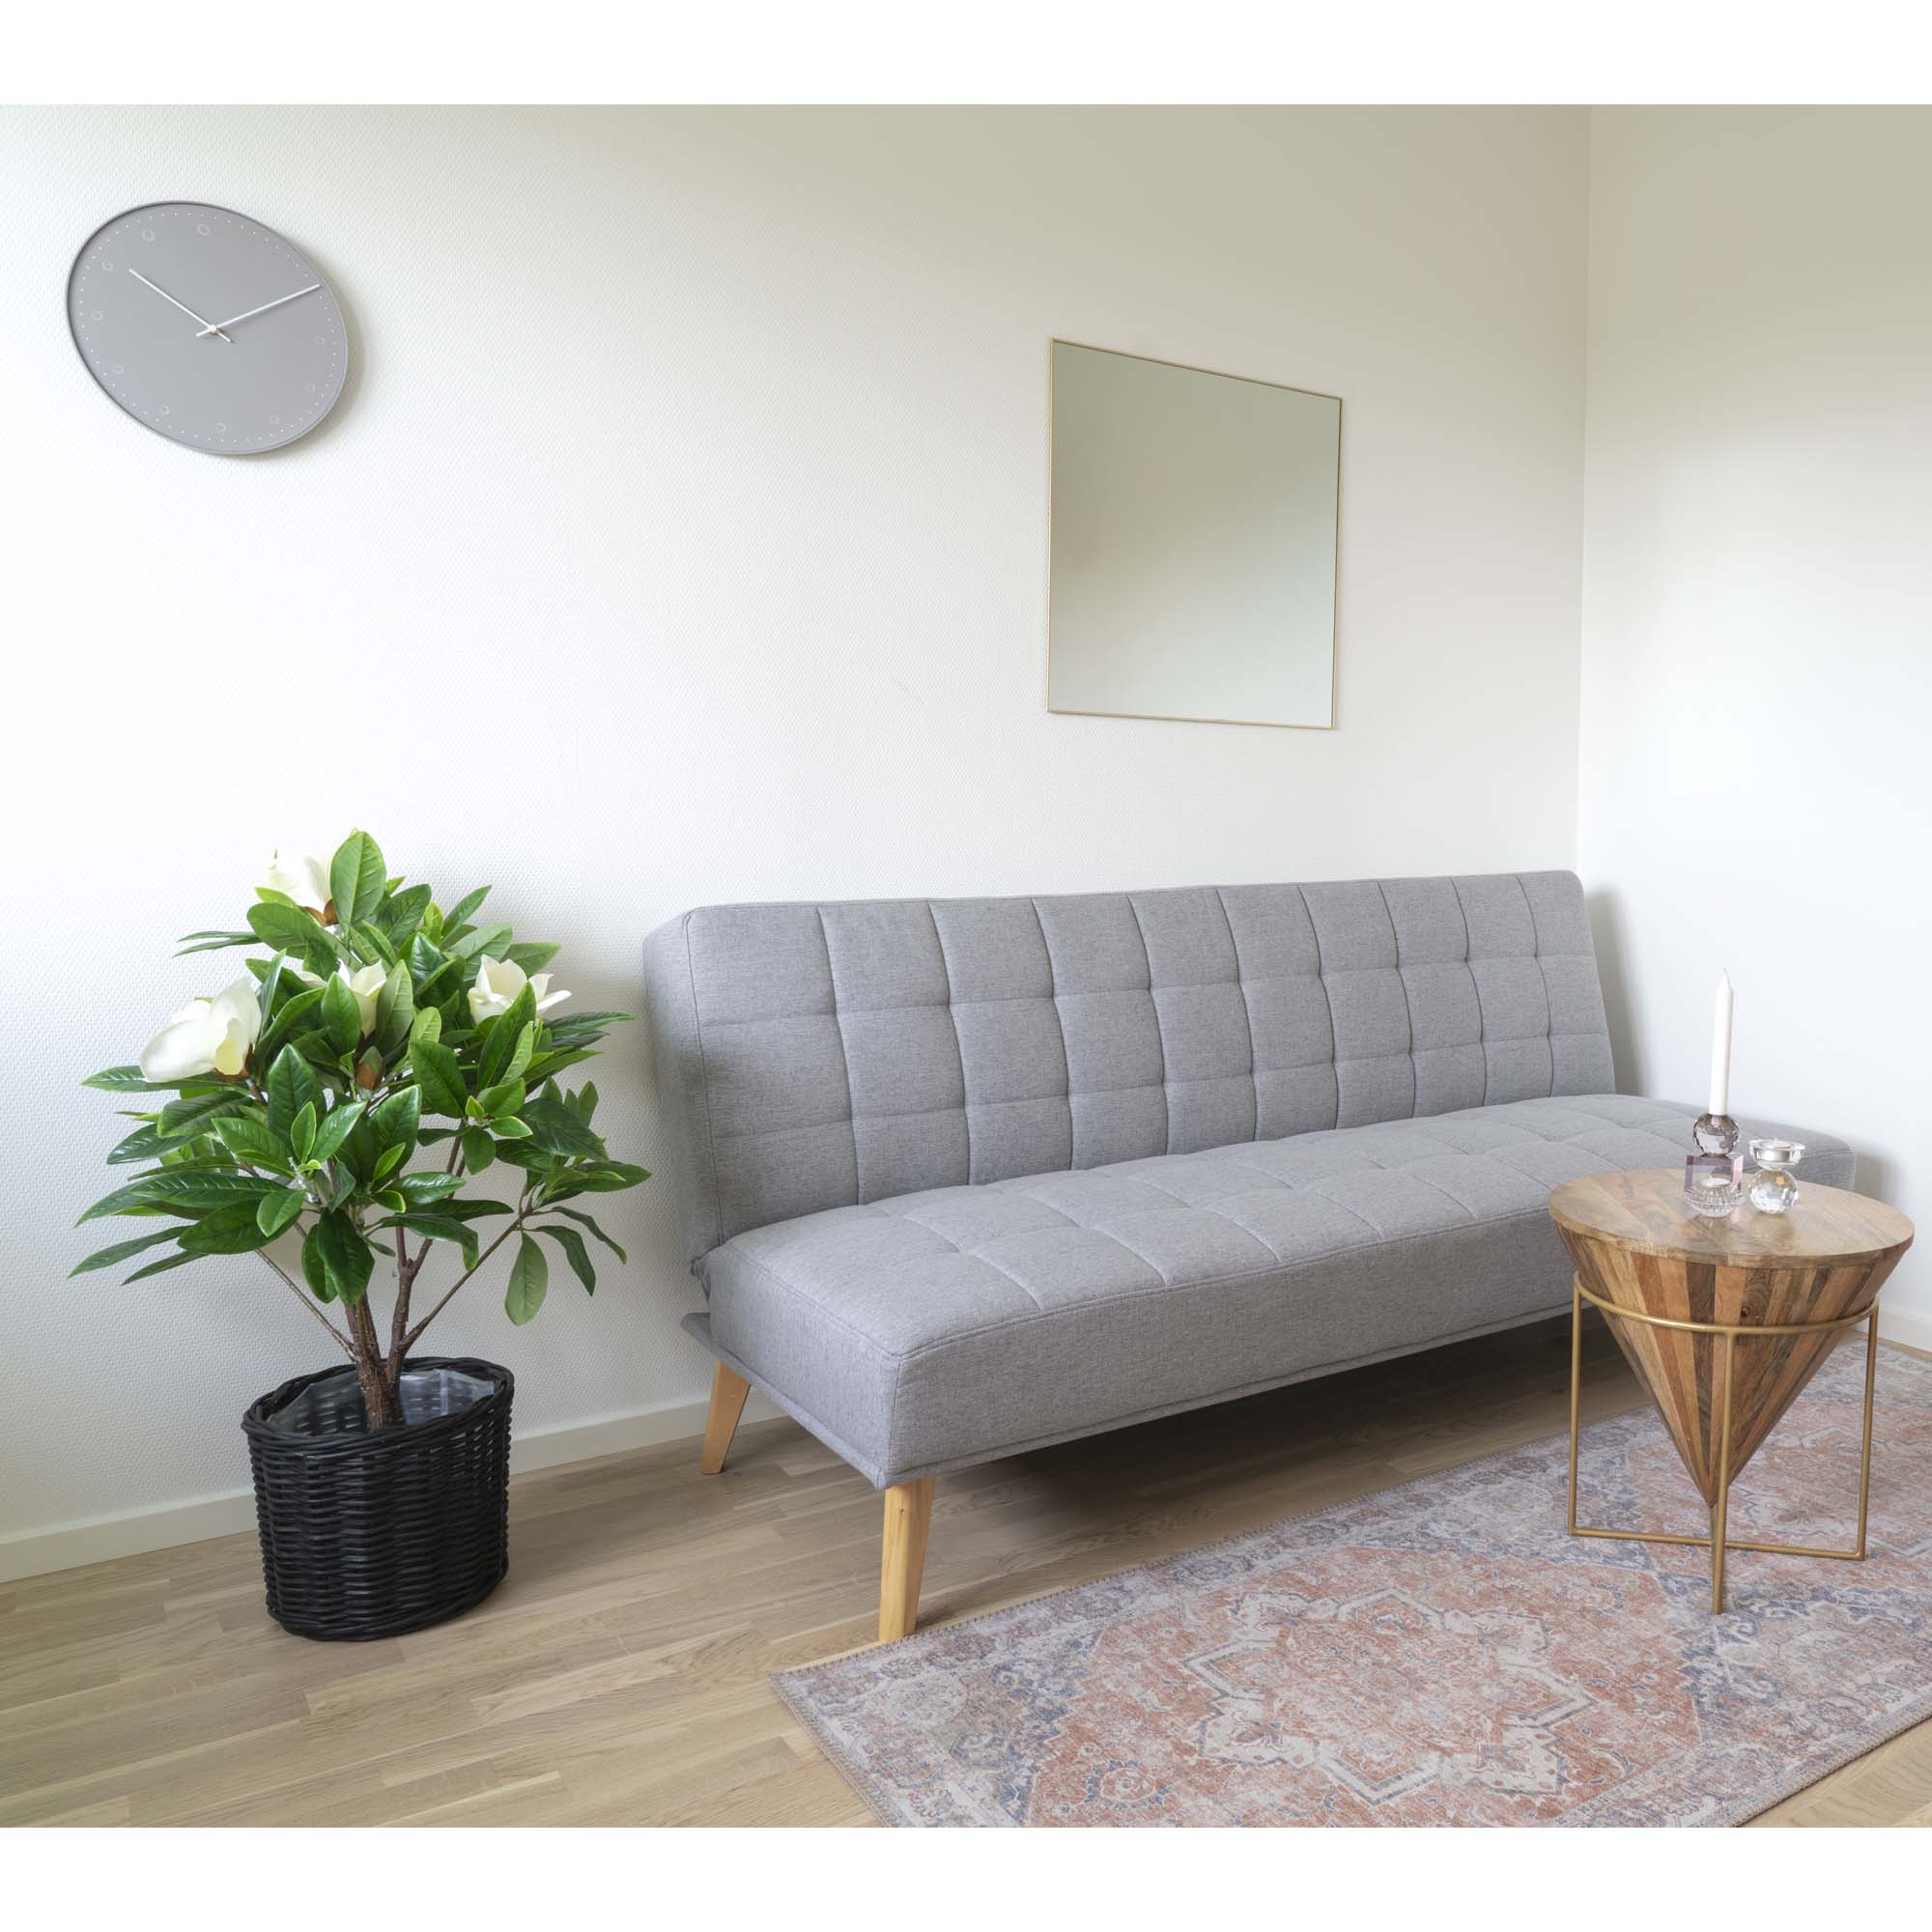 House Nordic - Oxford soffa soffa